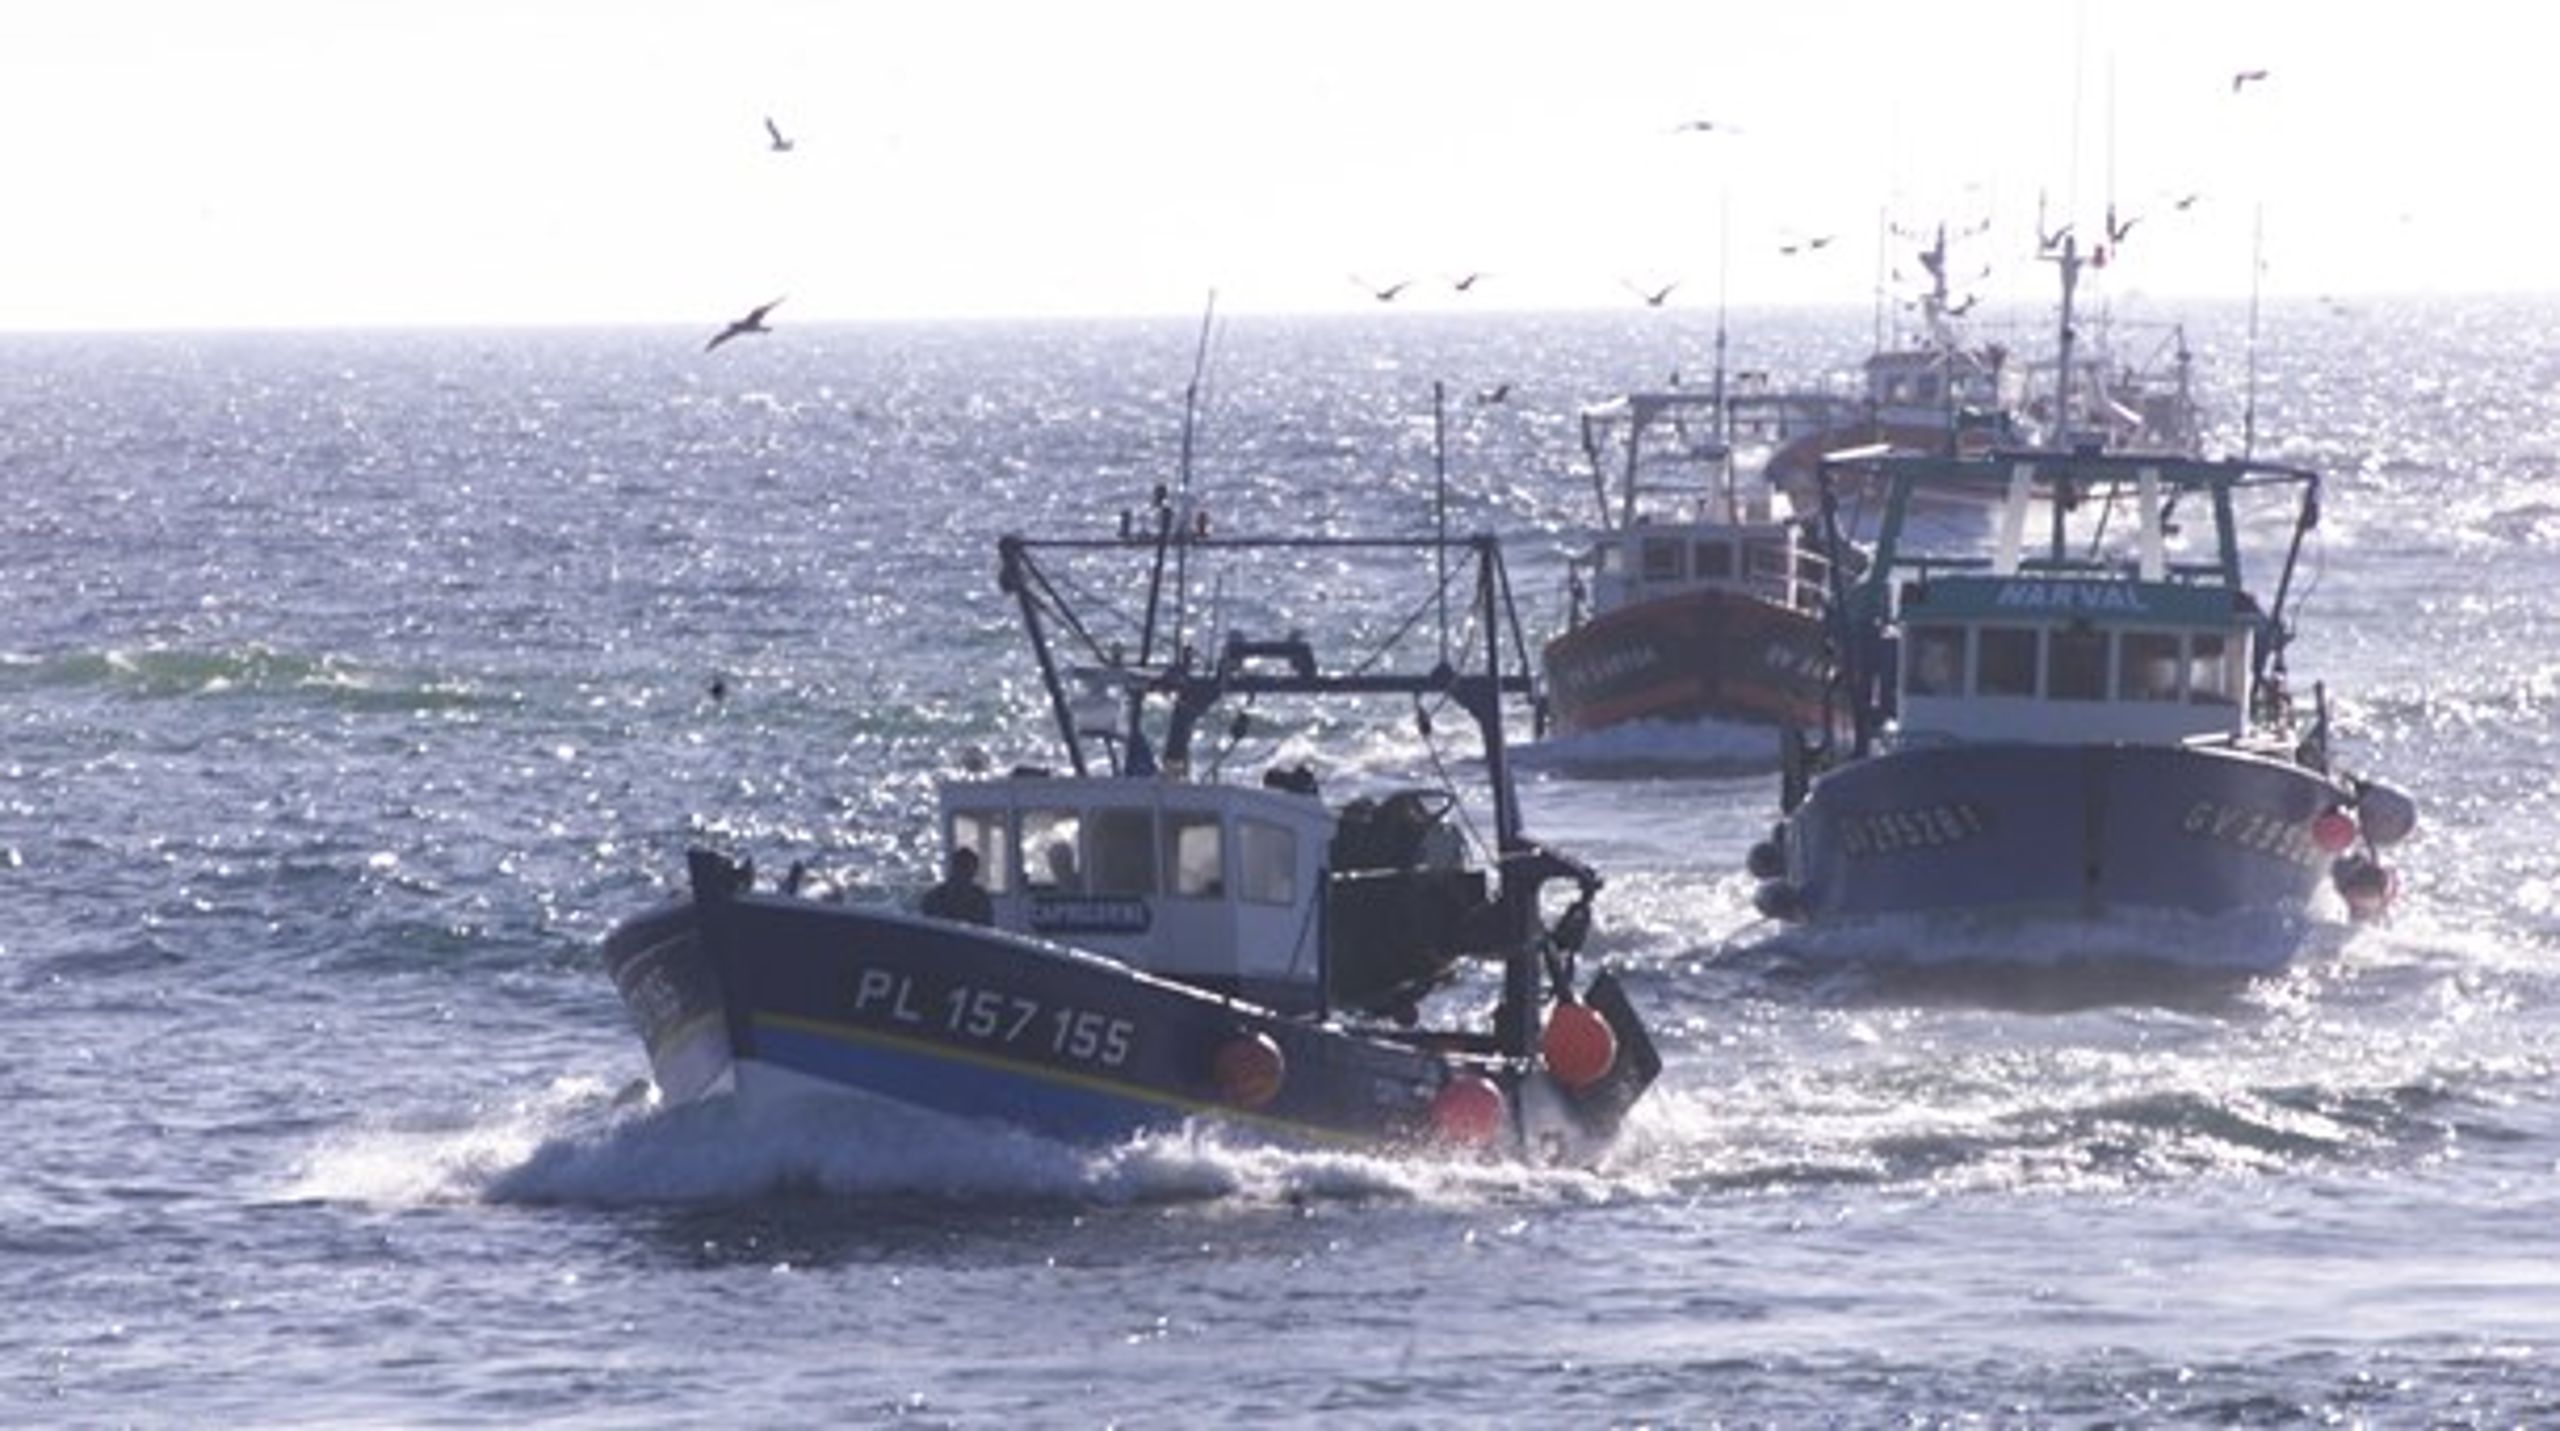 Fiskeristyrelsen skal bruge et nyt kontrolskib til at kontrollere fiskebåde i Nordsøen, Skagerrak og det nordlige Kattegat samt deltage i inspektionstogter i Nordatlanten. Arkivfoto.